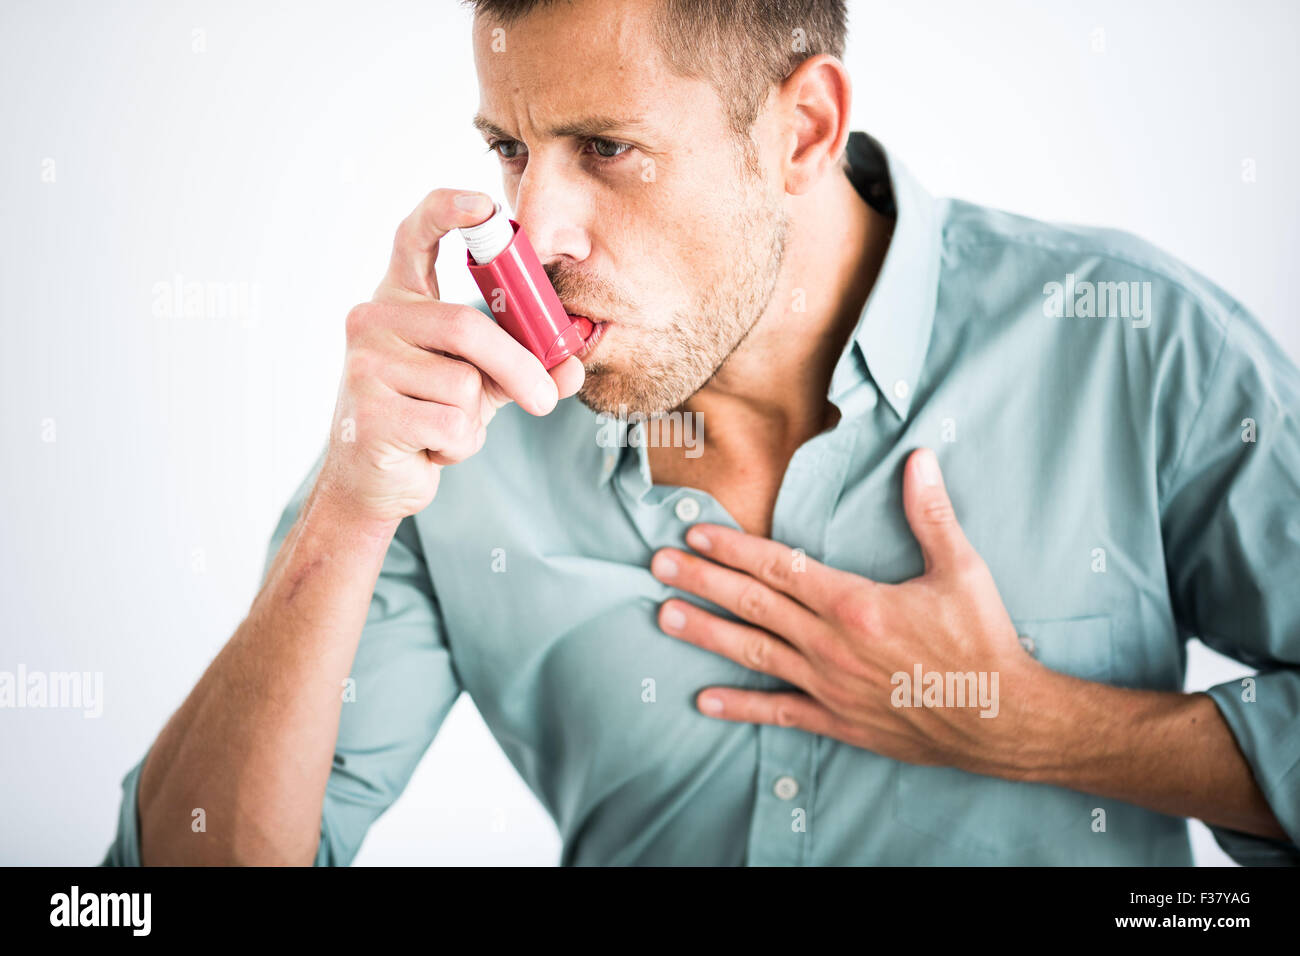 man-using-an-inhaler-during-an-asthma-attack-F37YAG.jpg